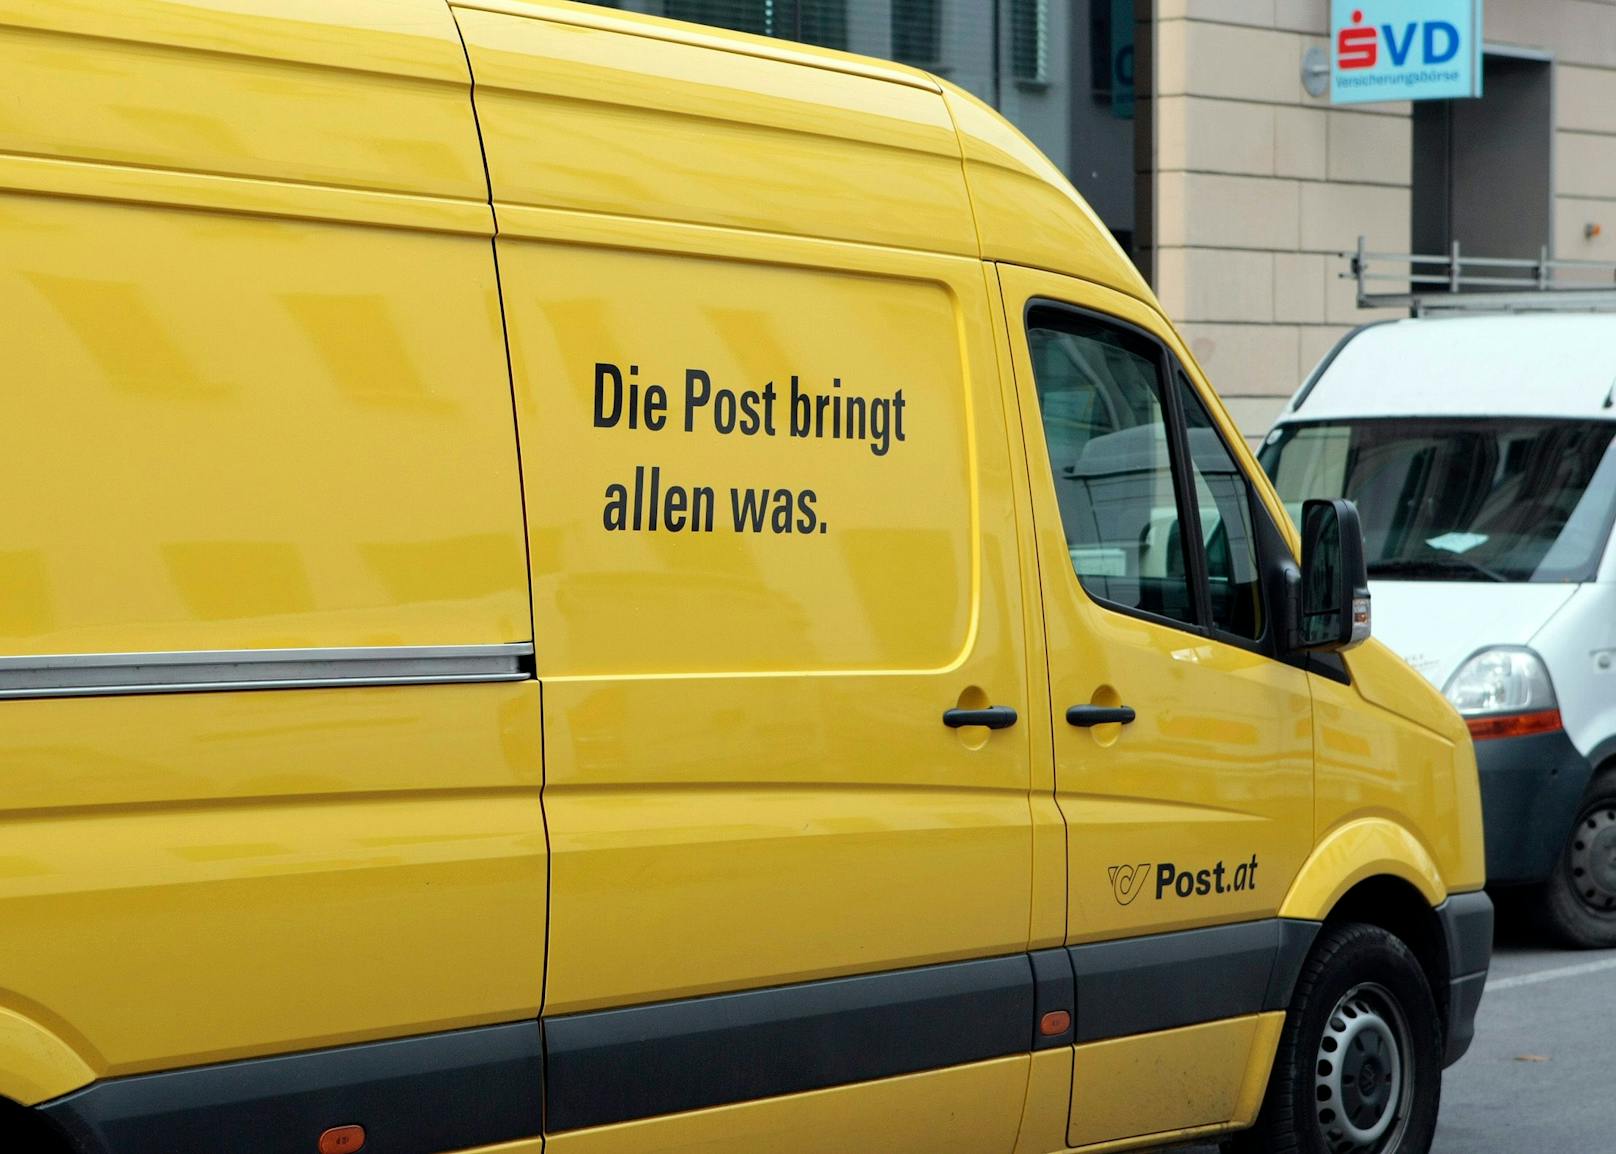 Die Bürger fordern eine vollwertige Poststelle in Groß-Enzersdorf.